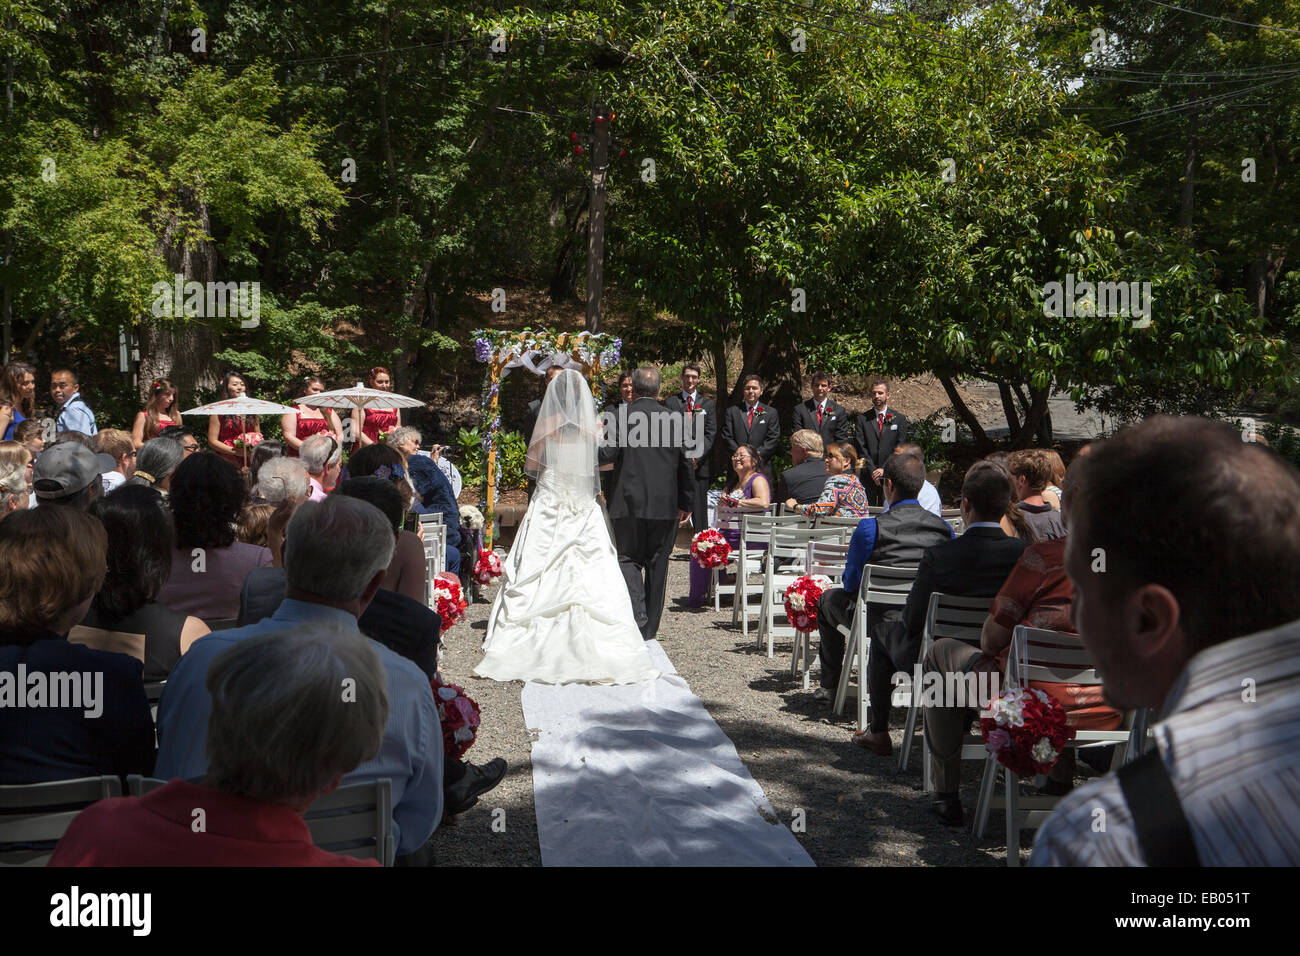 Wedding ceremony in a garden, Ross, California, USA Stock Photo